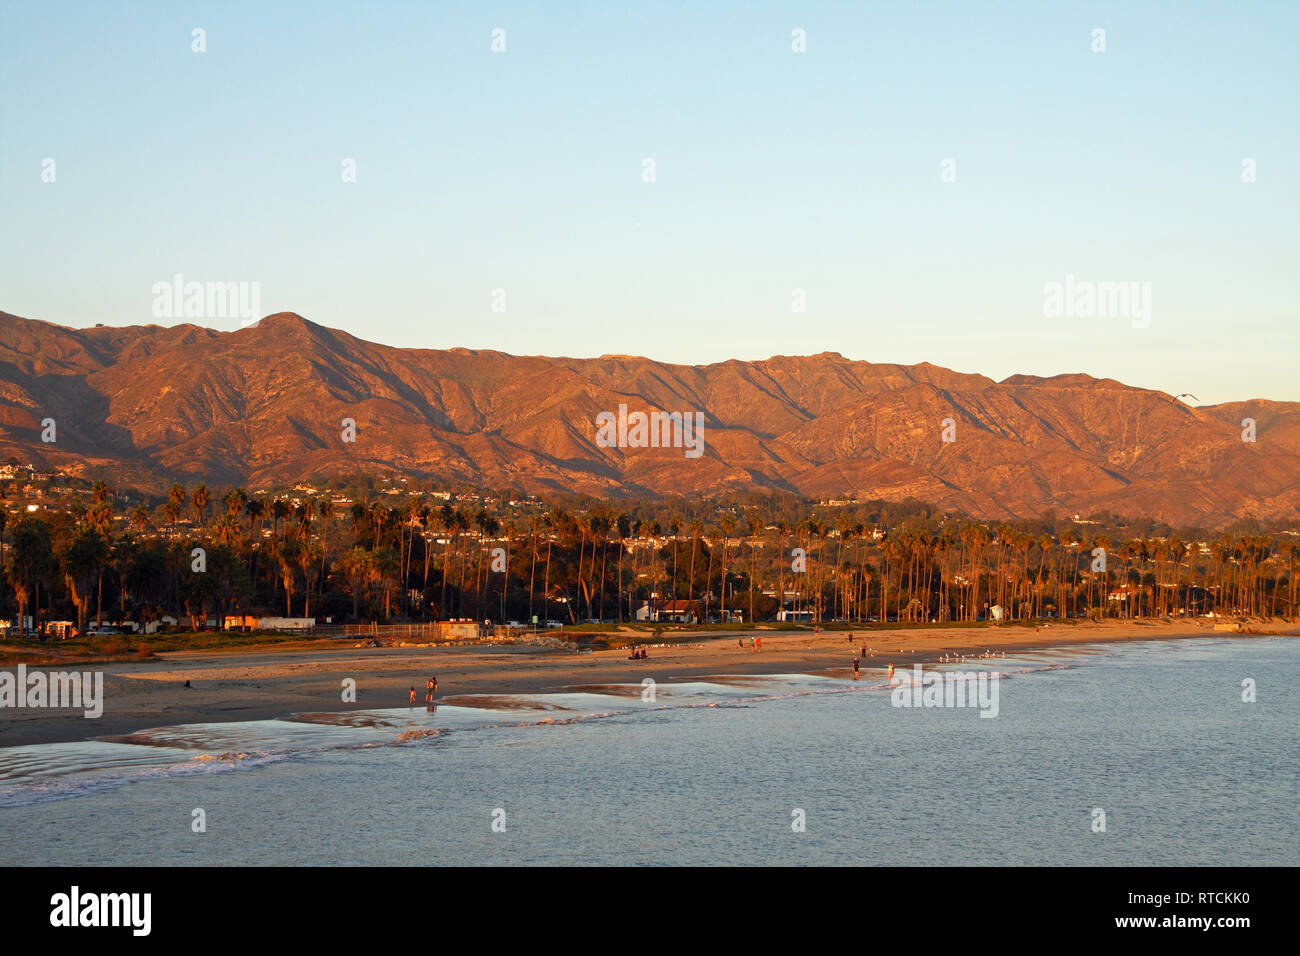 Vue du coucher de soleil de la plage de l'Est et les montagnes de Santa Ynez, de Stearns Wharf, Santa Barbara, Californie Banque D'Images